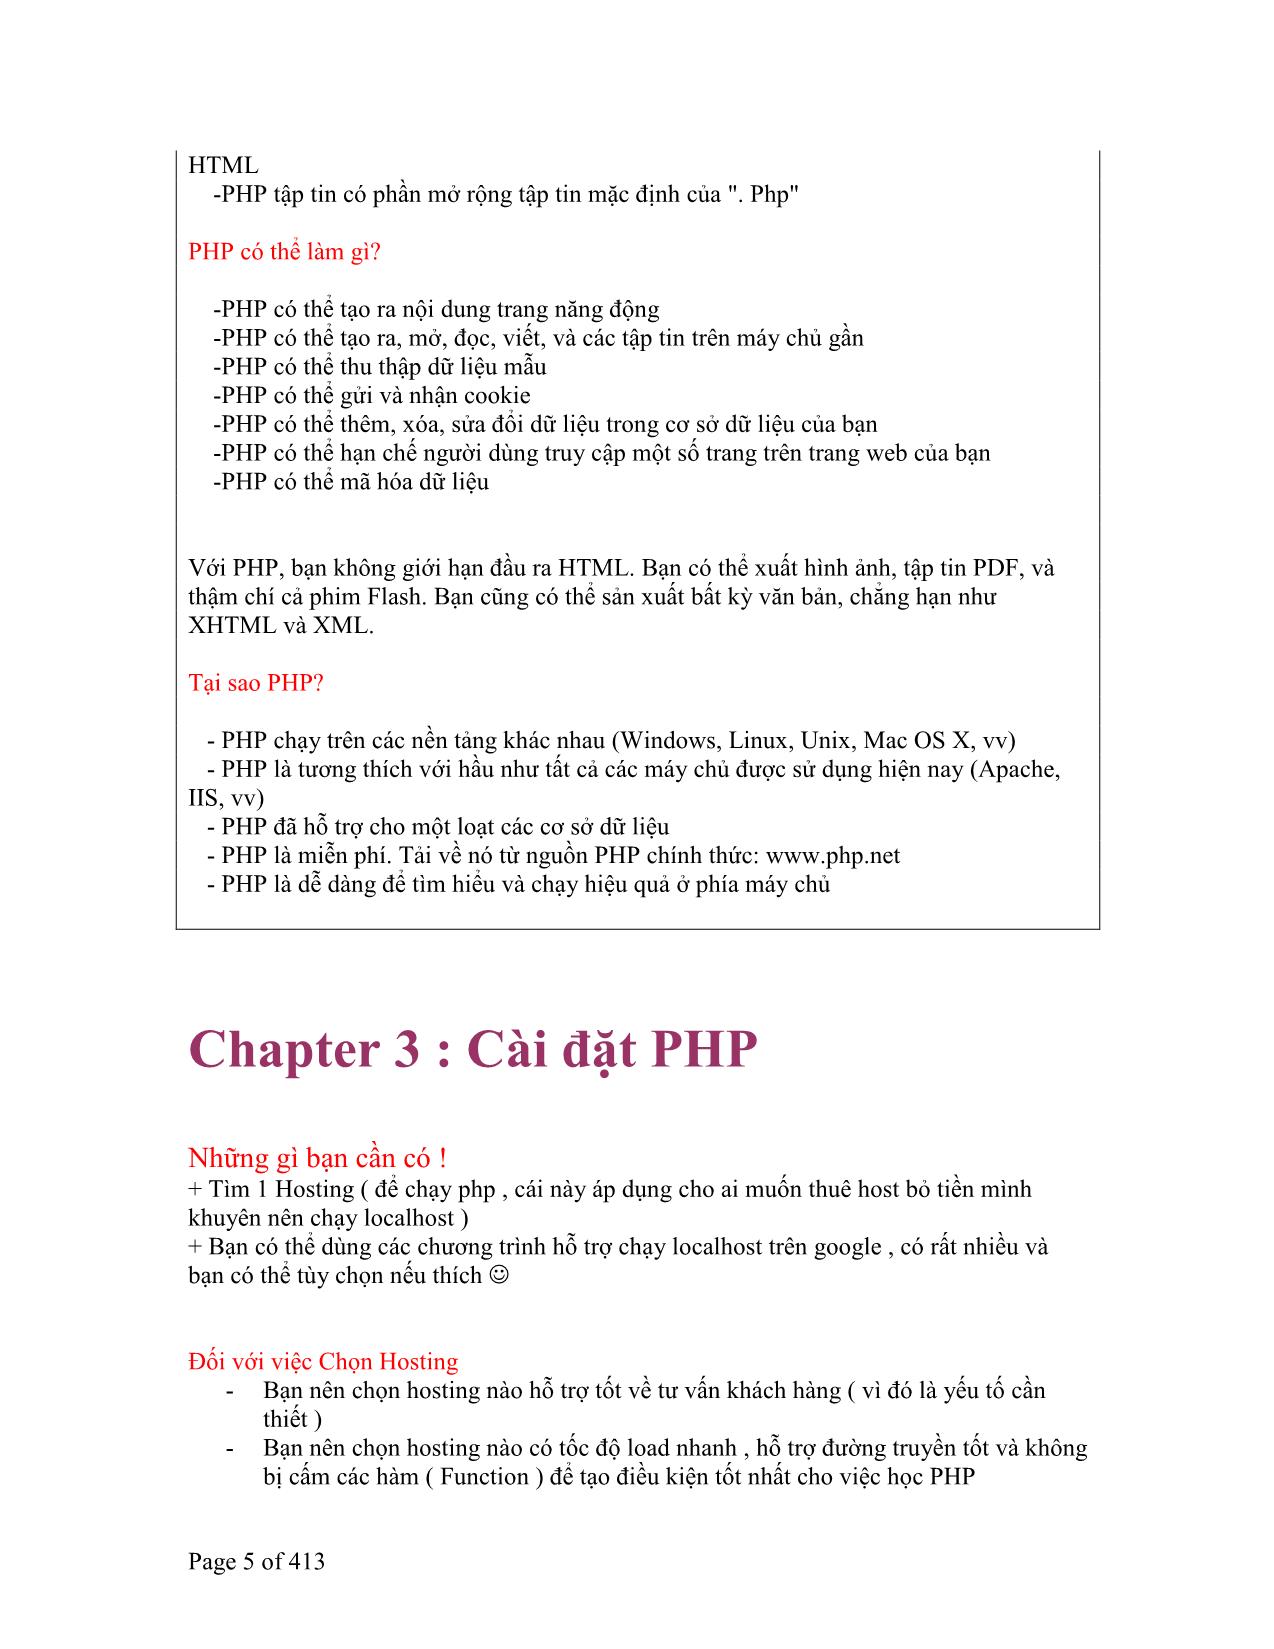 Tổng hợp về PHP trang 5